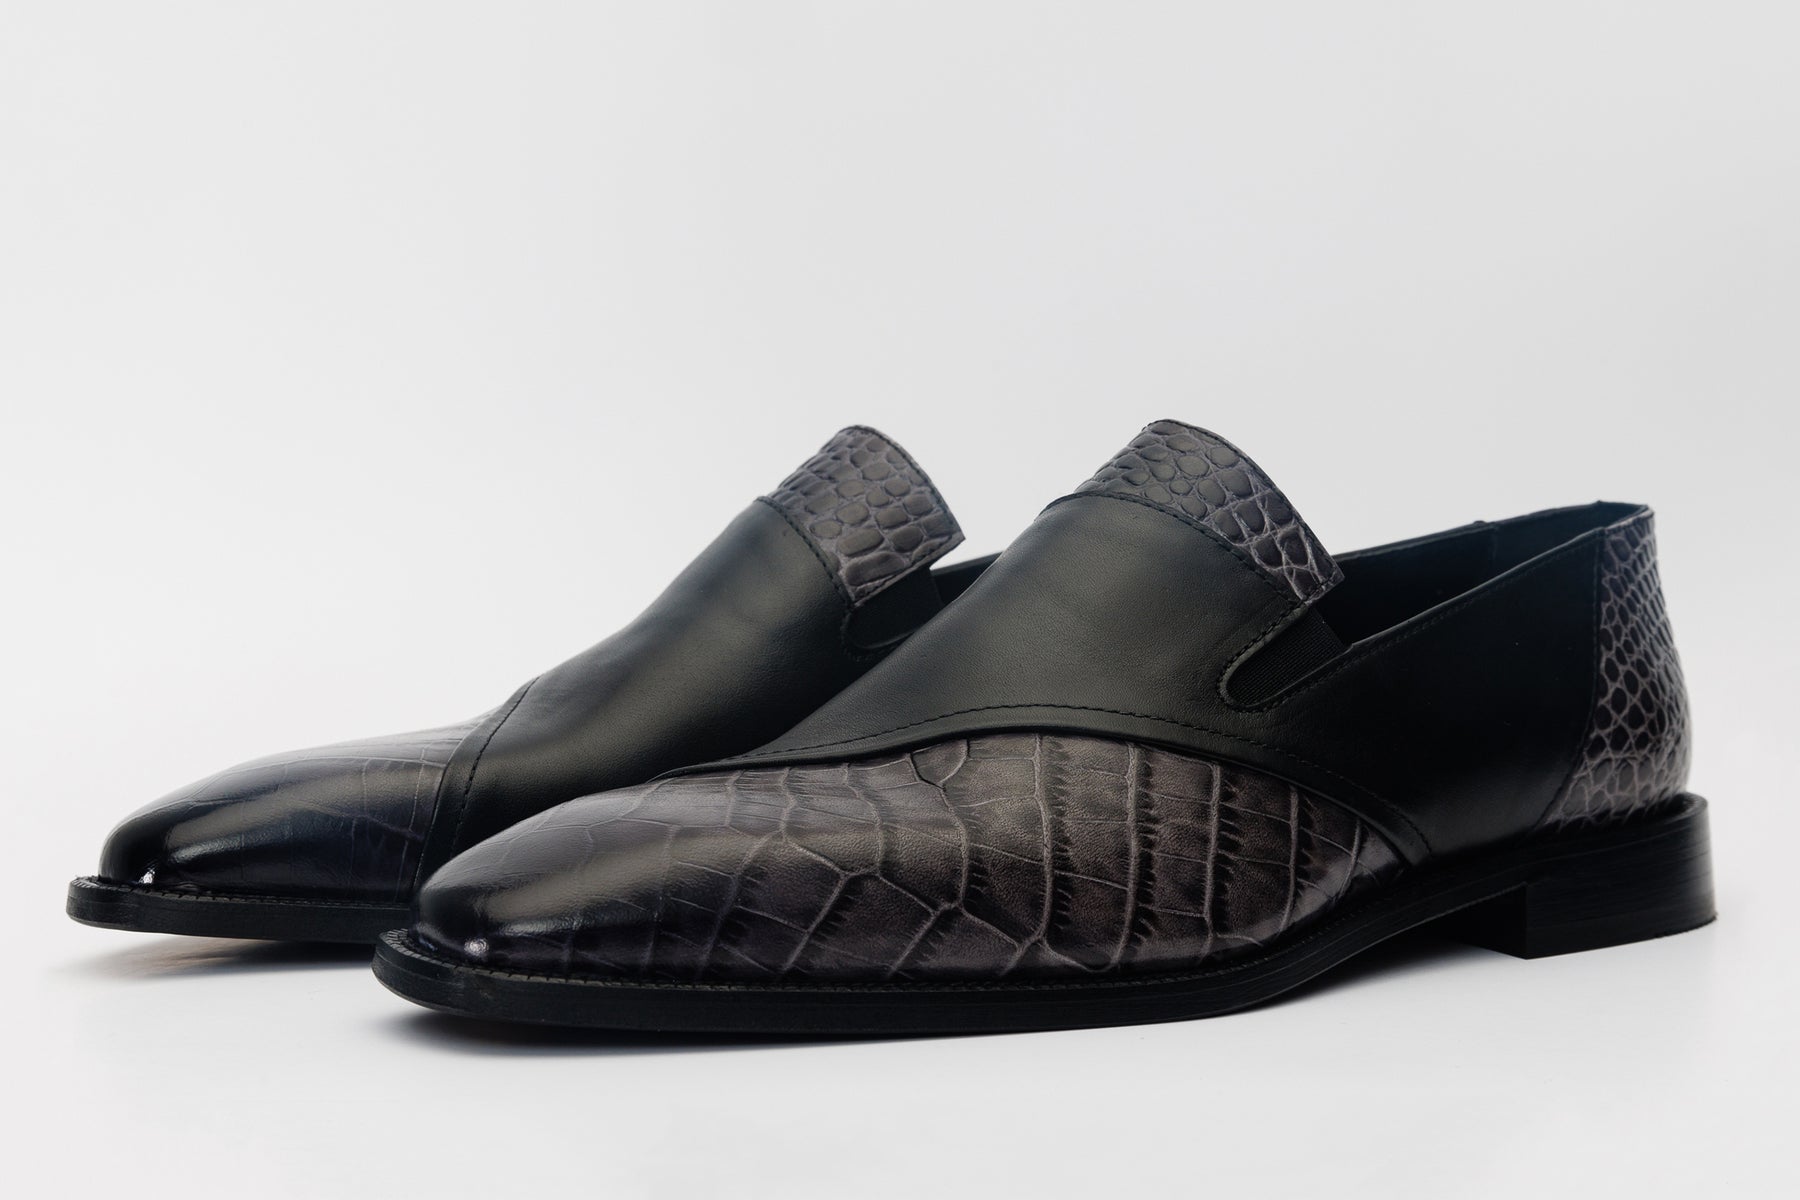 The Mississippi Black Leather Loafer Shoe – Vinci Leather Shoes